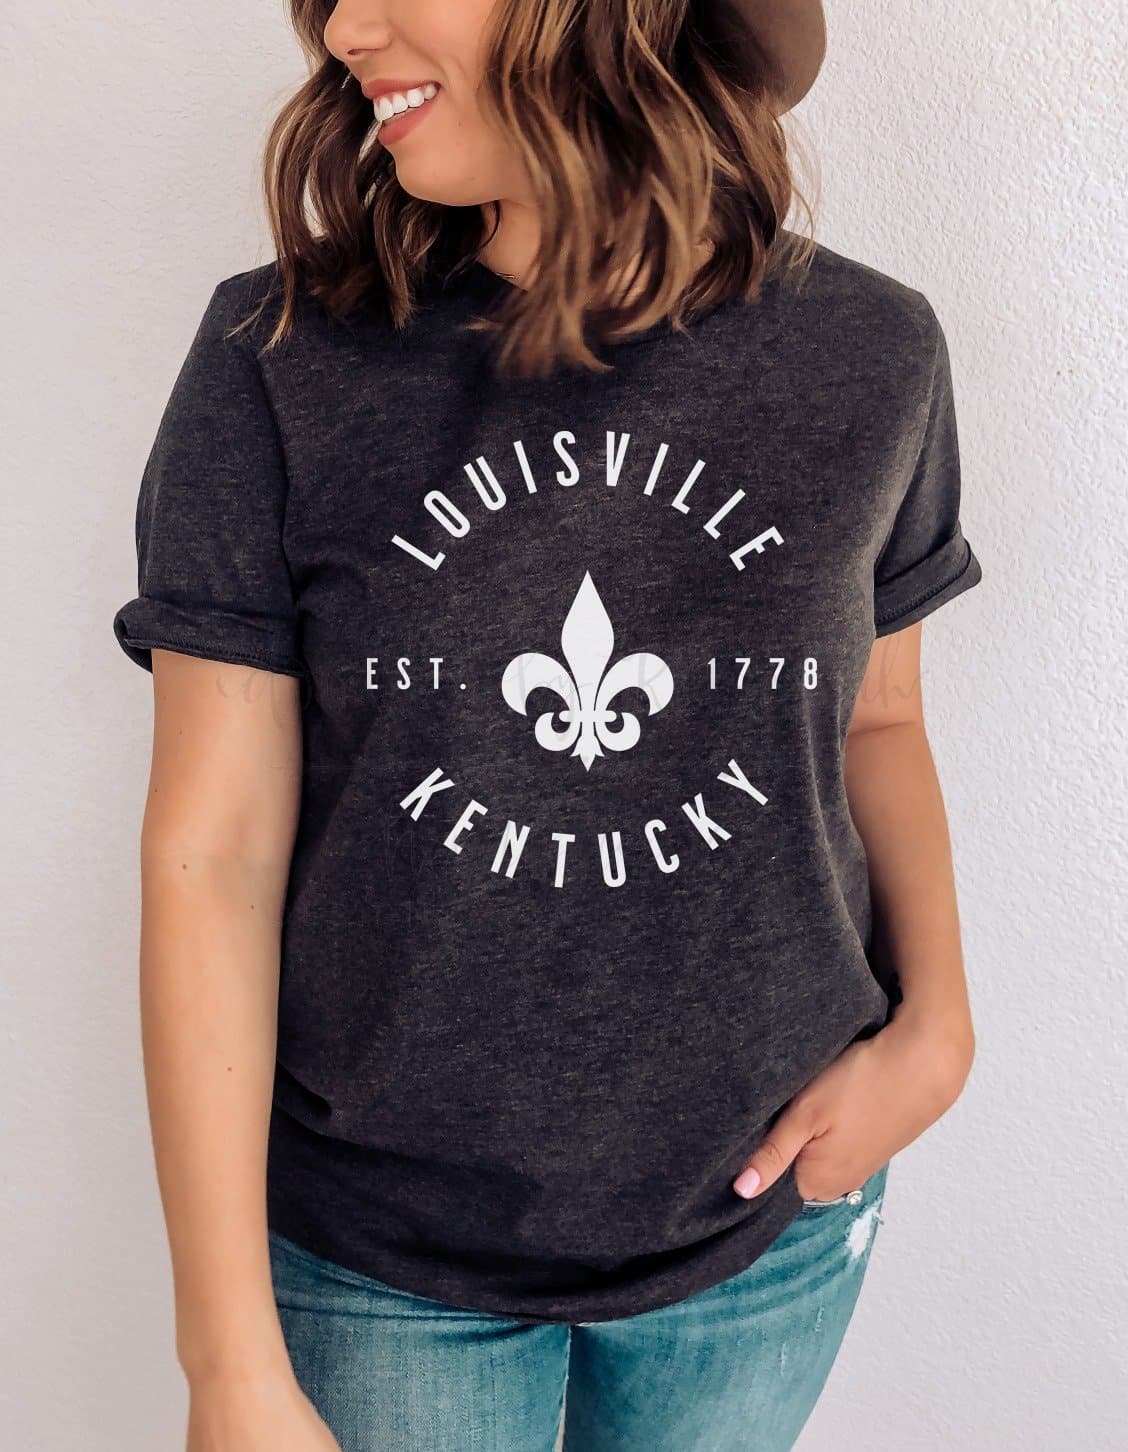 Louisville Kentucky | Kids T-Shirt